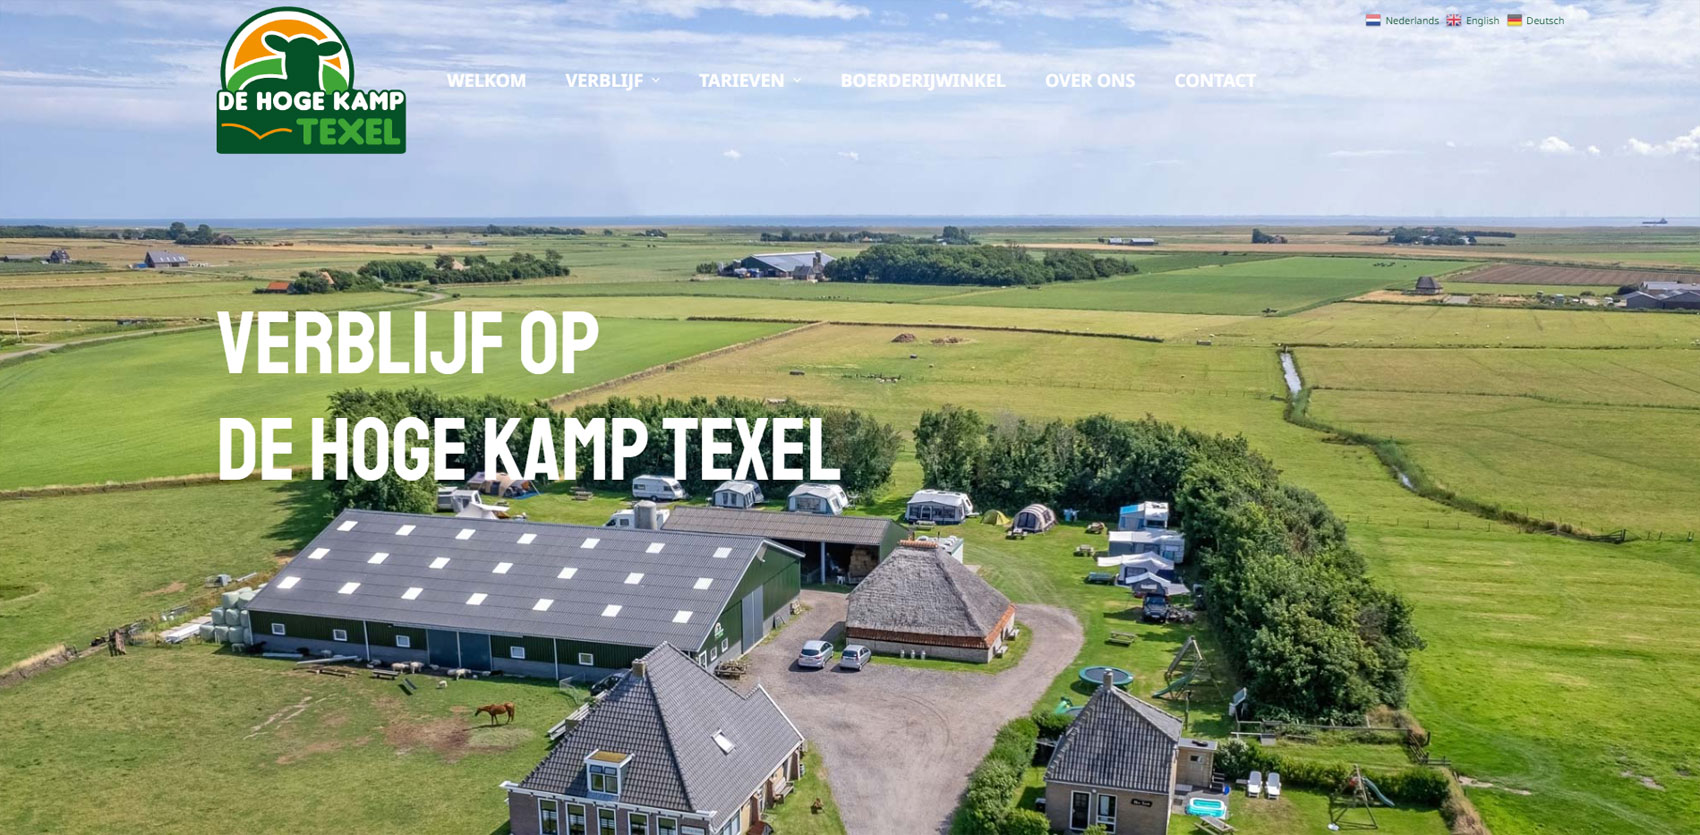 De Hoge Kamp Texel